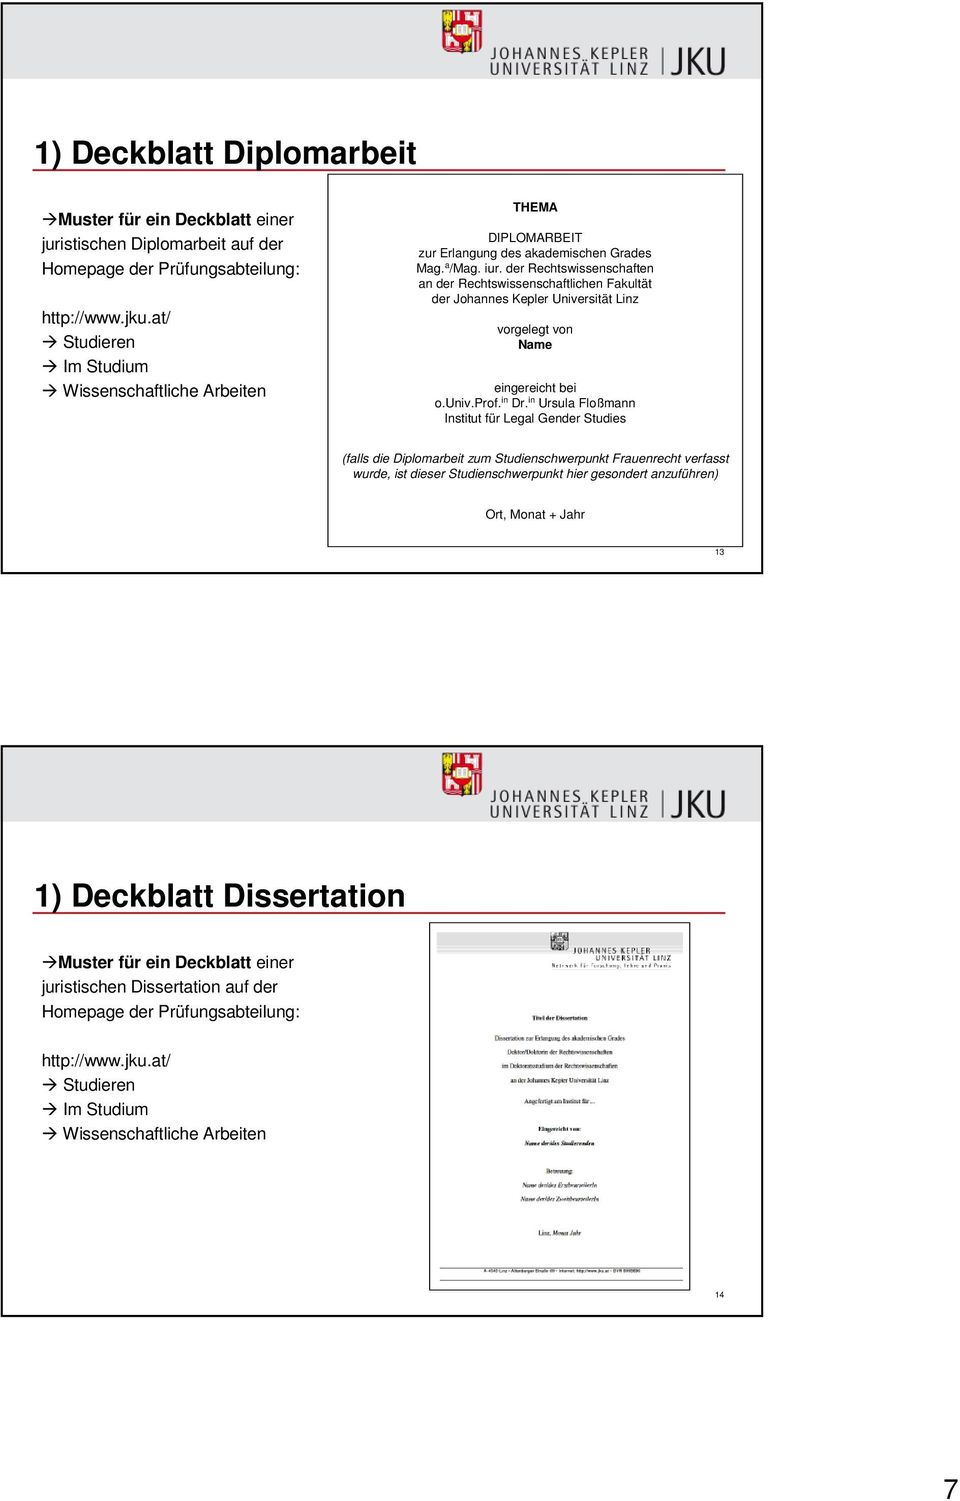 der Rechtswissenschaften an der Rechtswissenschaftlichen Fakultät der Johannes Kepler Universität Linz vorgelegt von Name eingereicht bei o.univ.prof. in Dr.